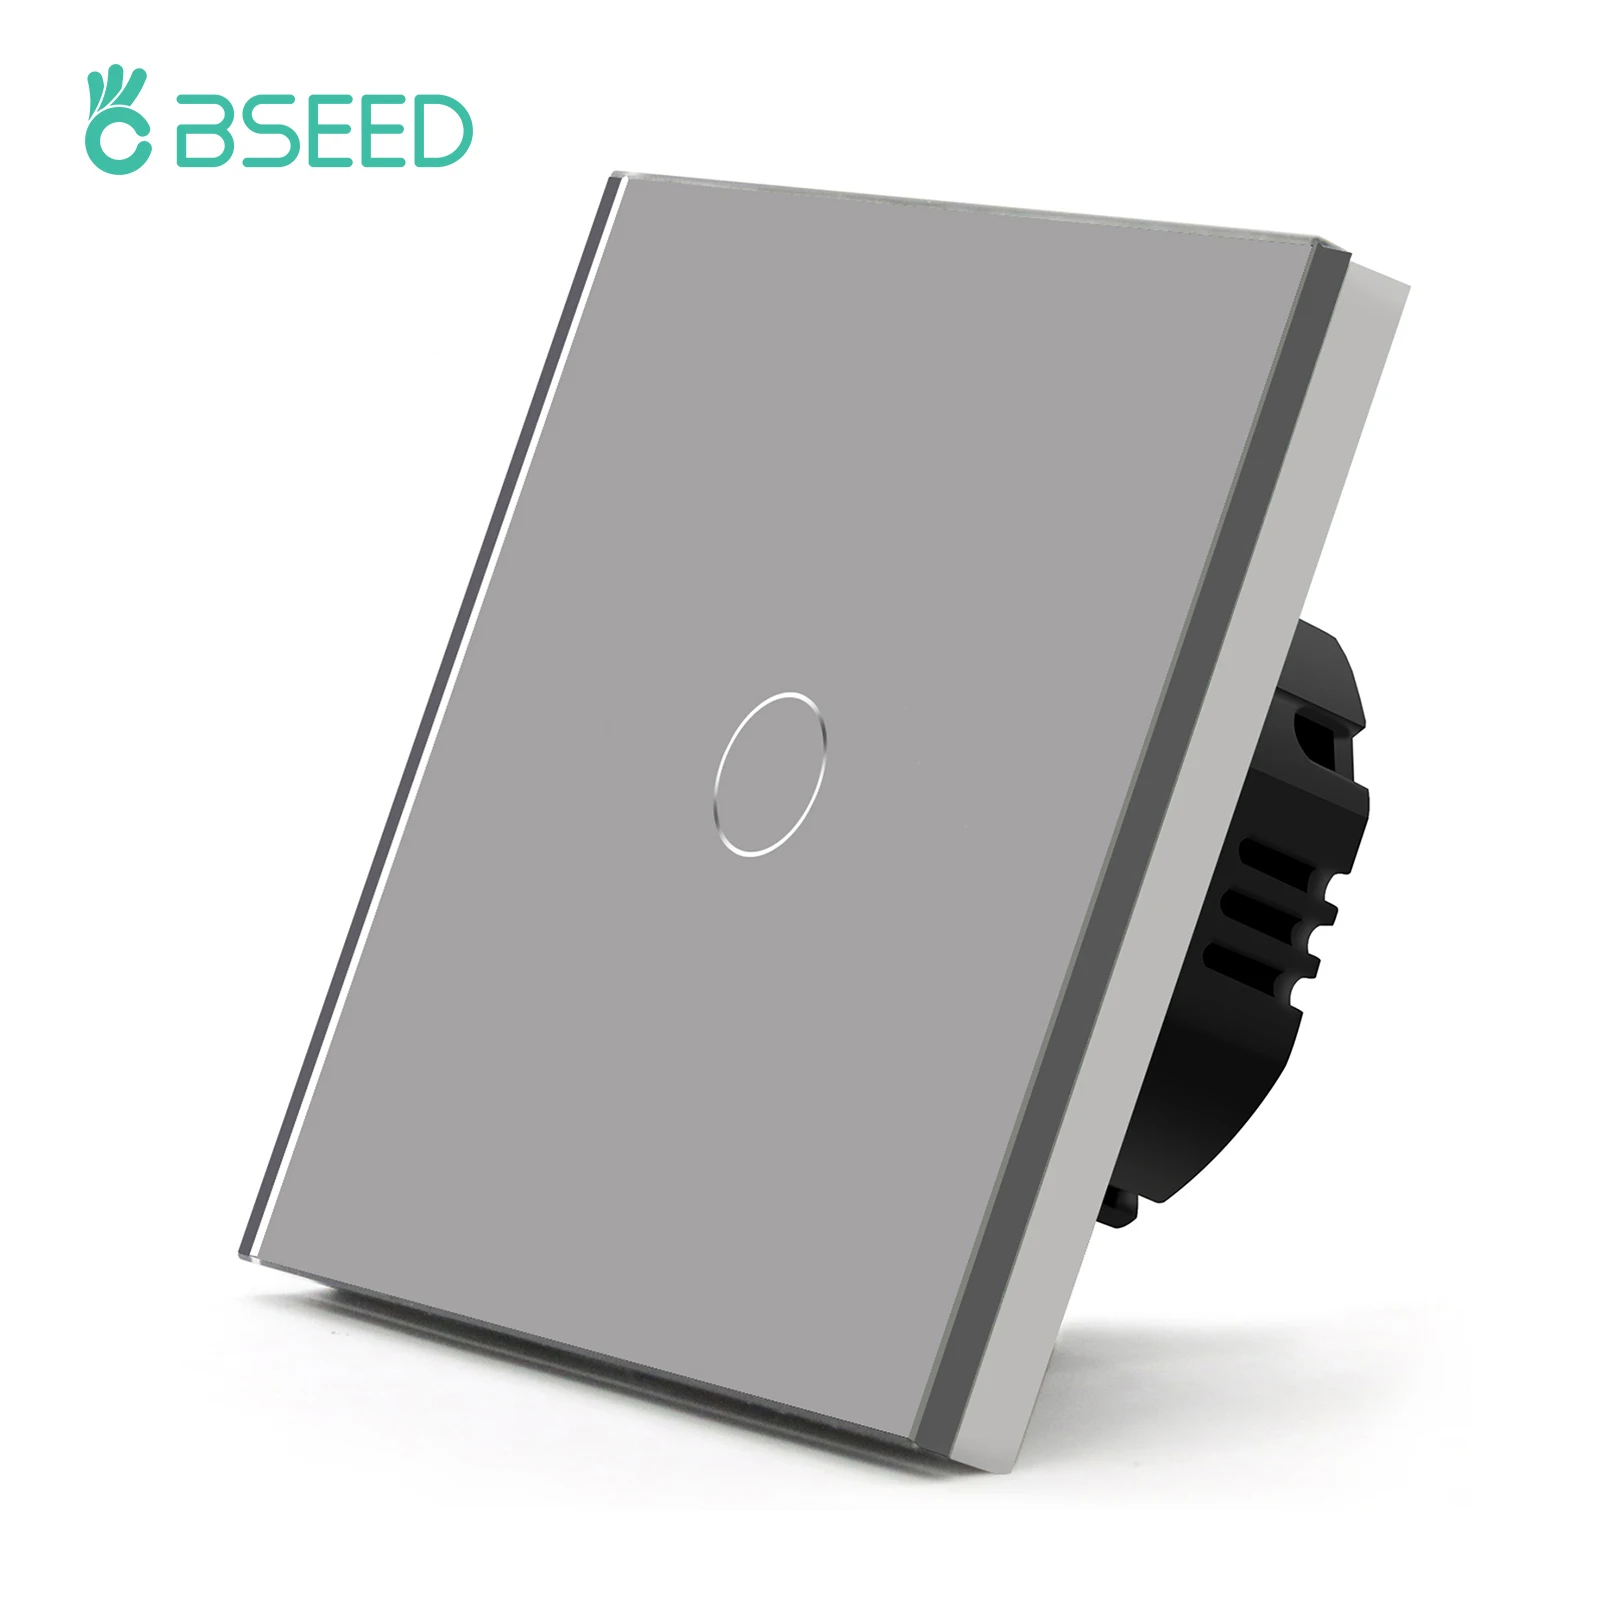 

Сенсорный выключатель света BSEED, настенный сенсорный выключатель 1/2/3 клавиши, 220 В, Синяя подсветка, стандарт ЕС, водонепроницаемый, 10 А